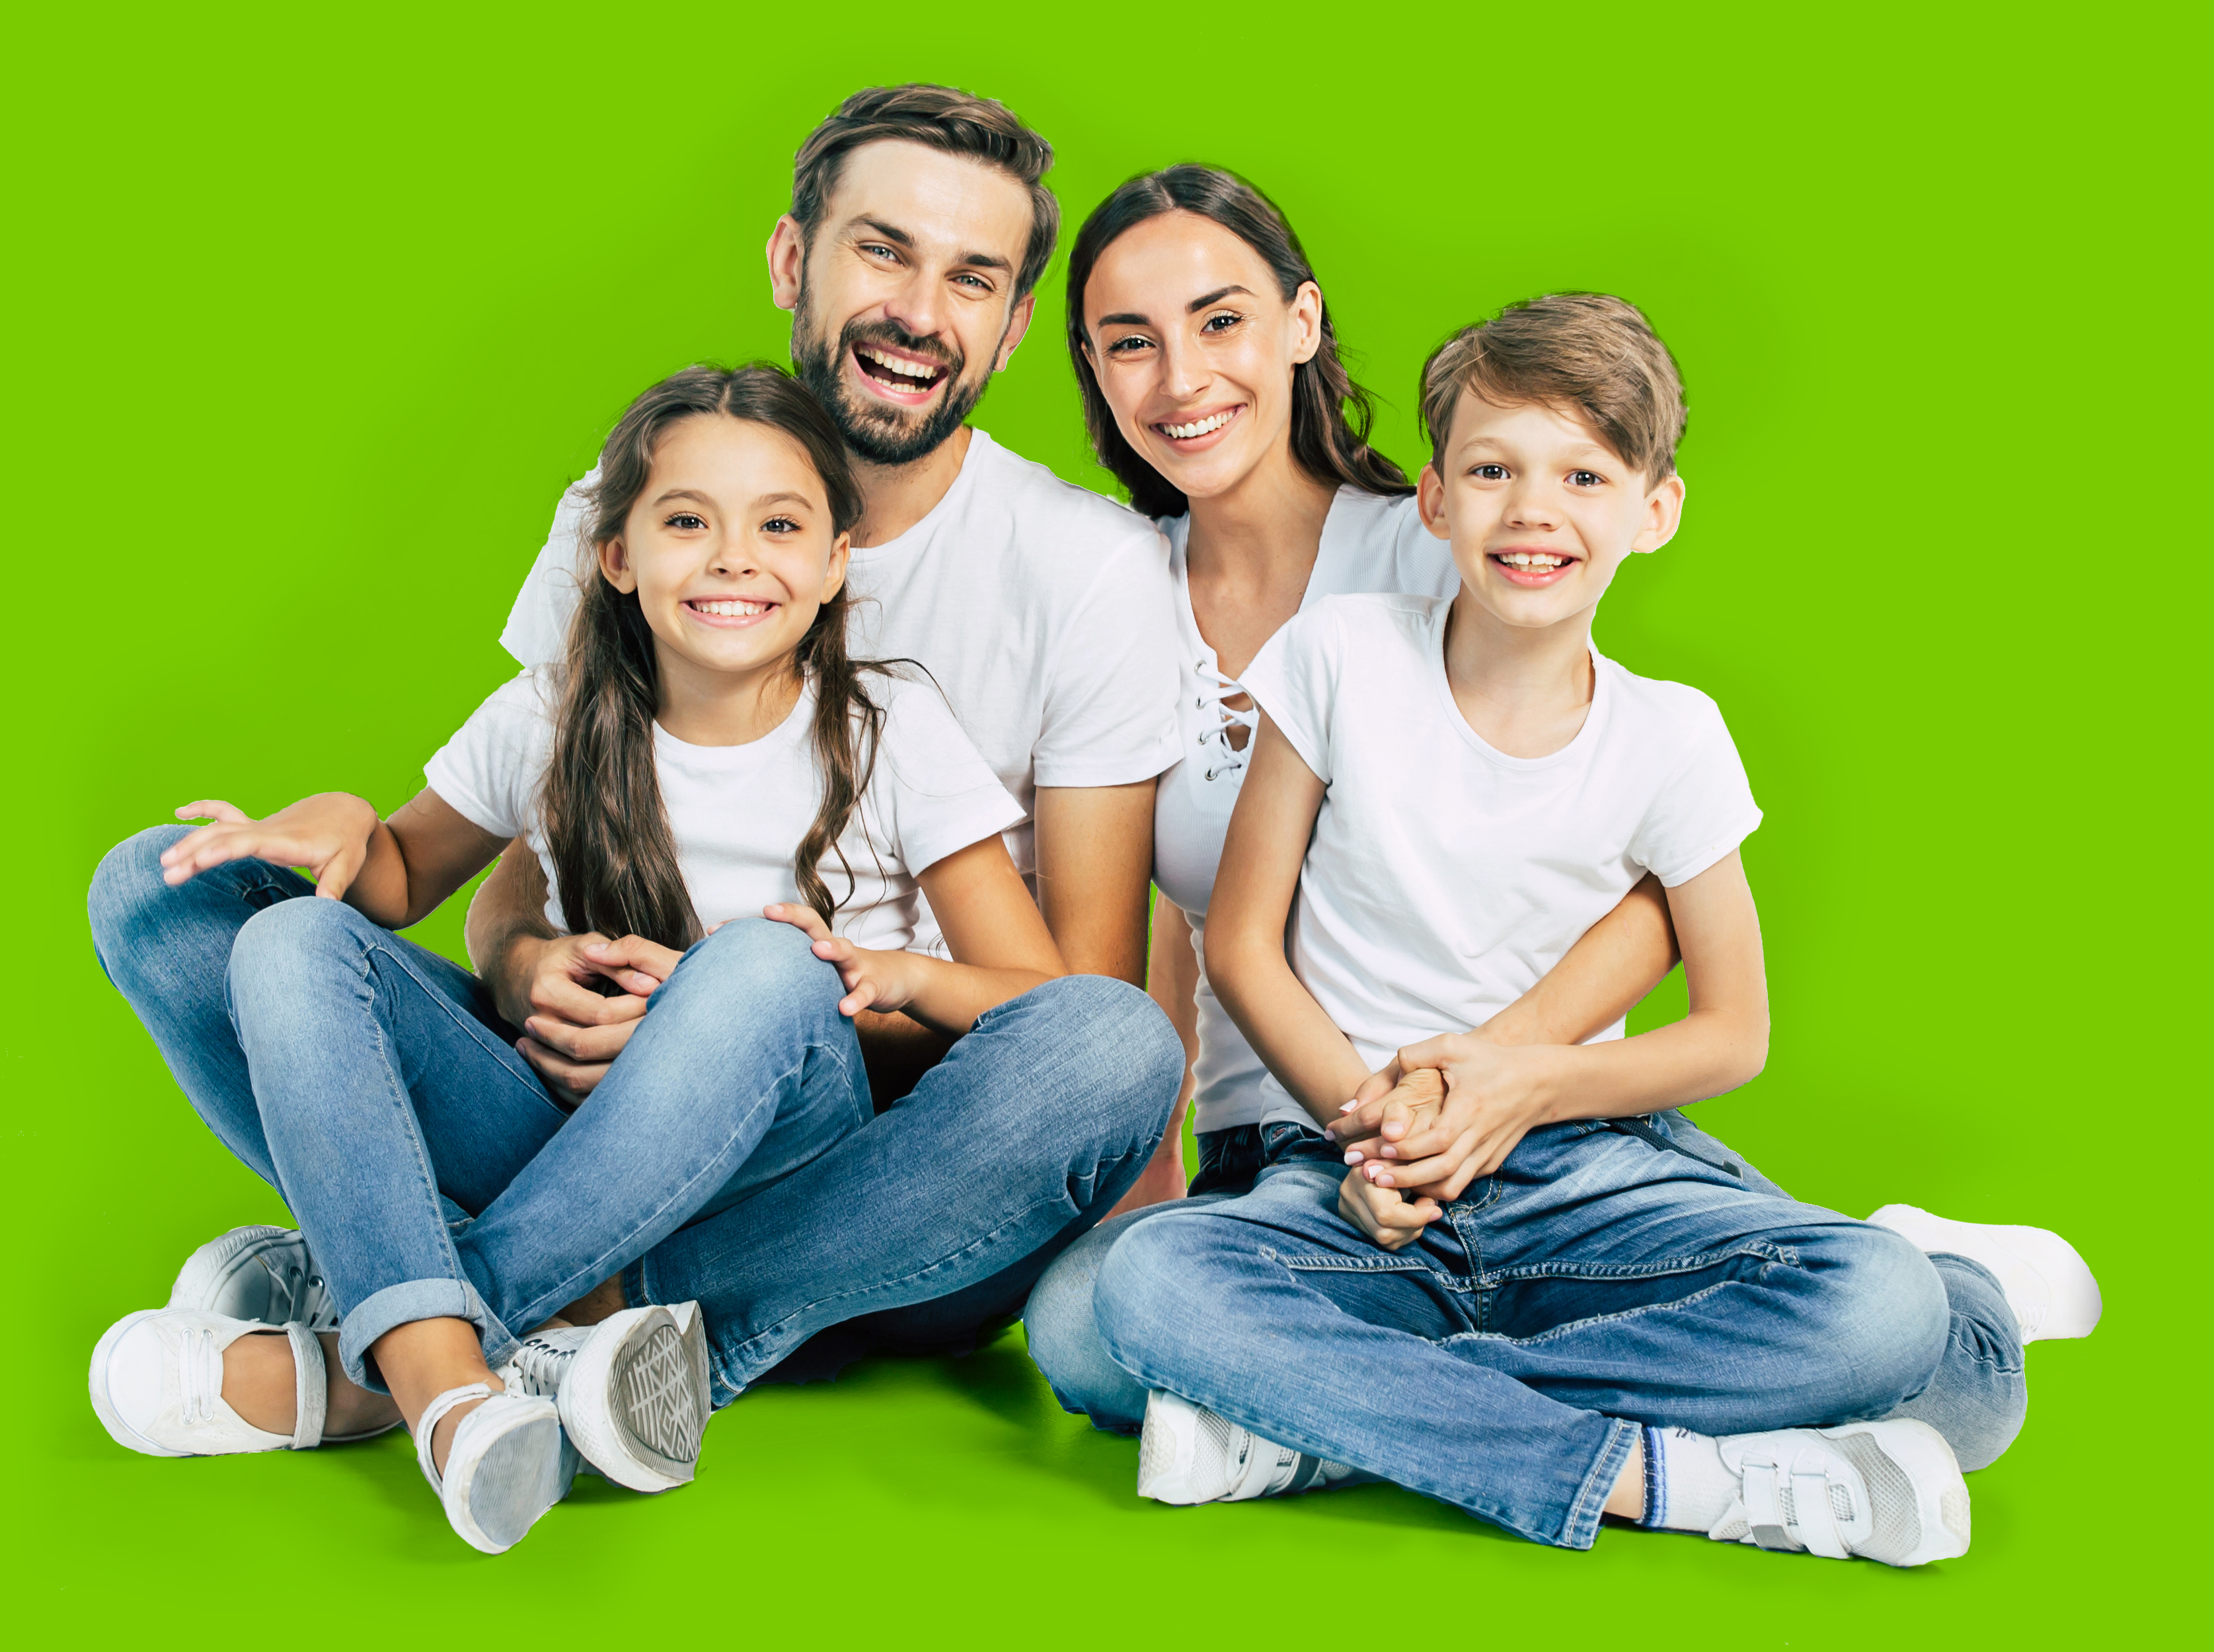 PT - Hline - Health offer - family portrait